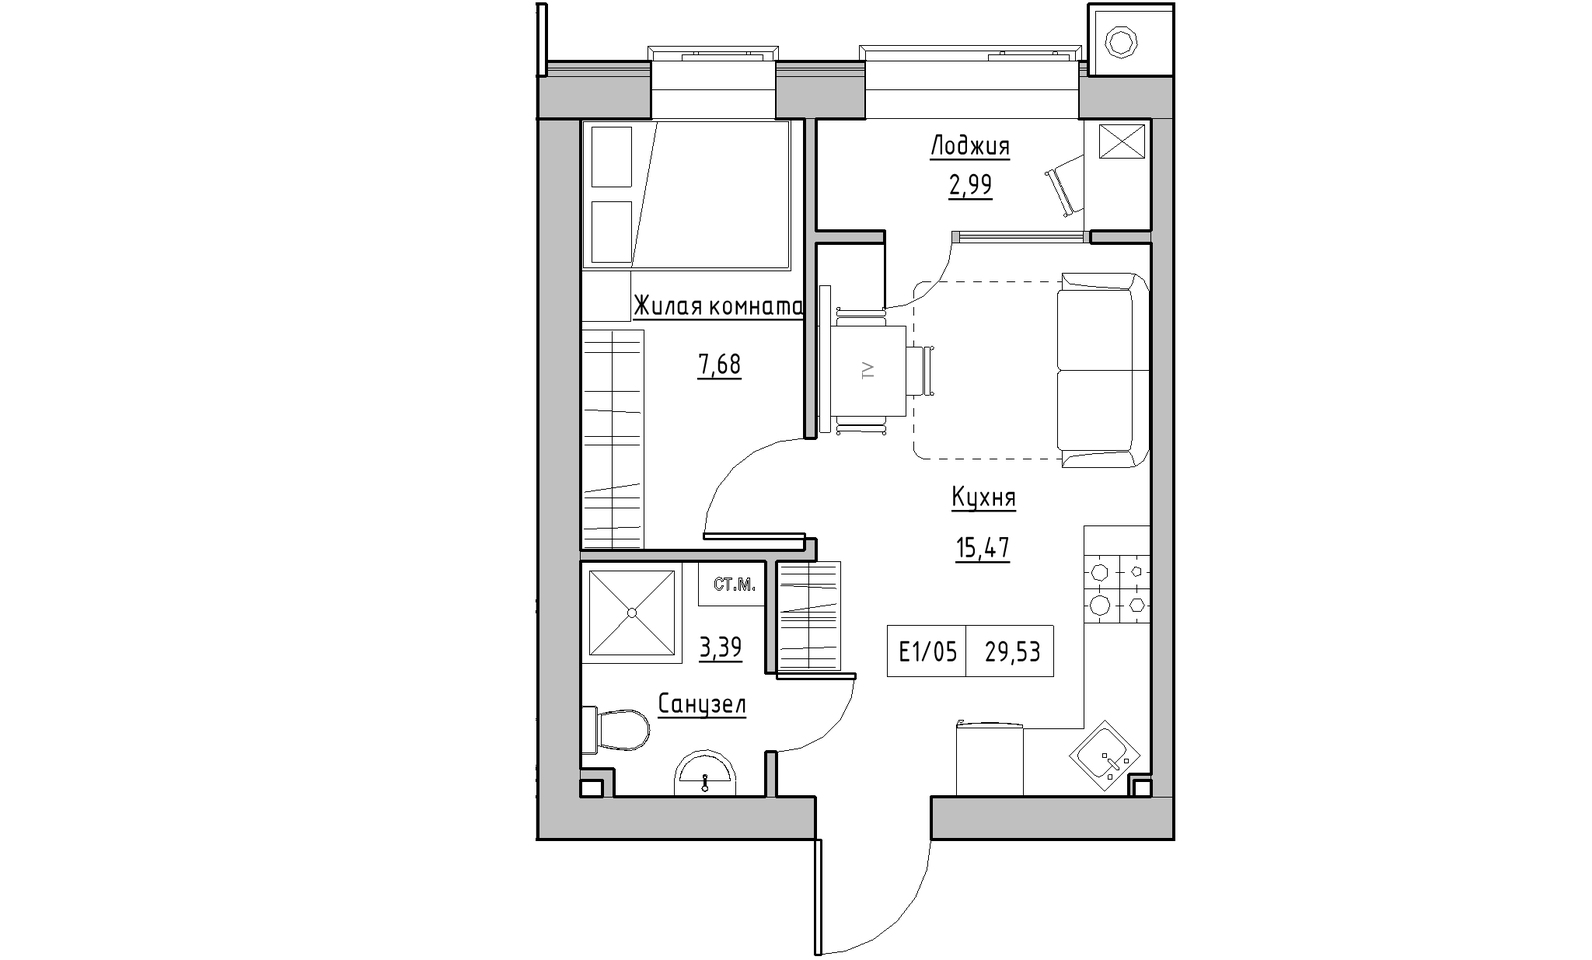 Планування 1-к квартира площею 29.53м2, KS-014-01/0006.